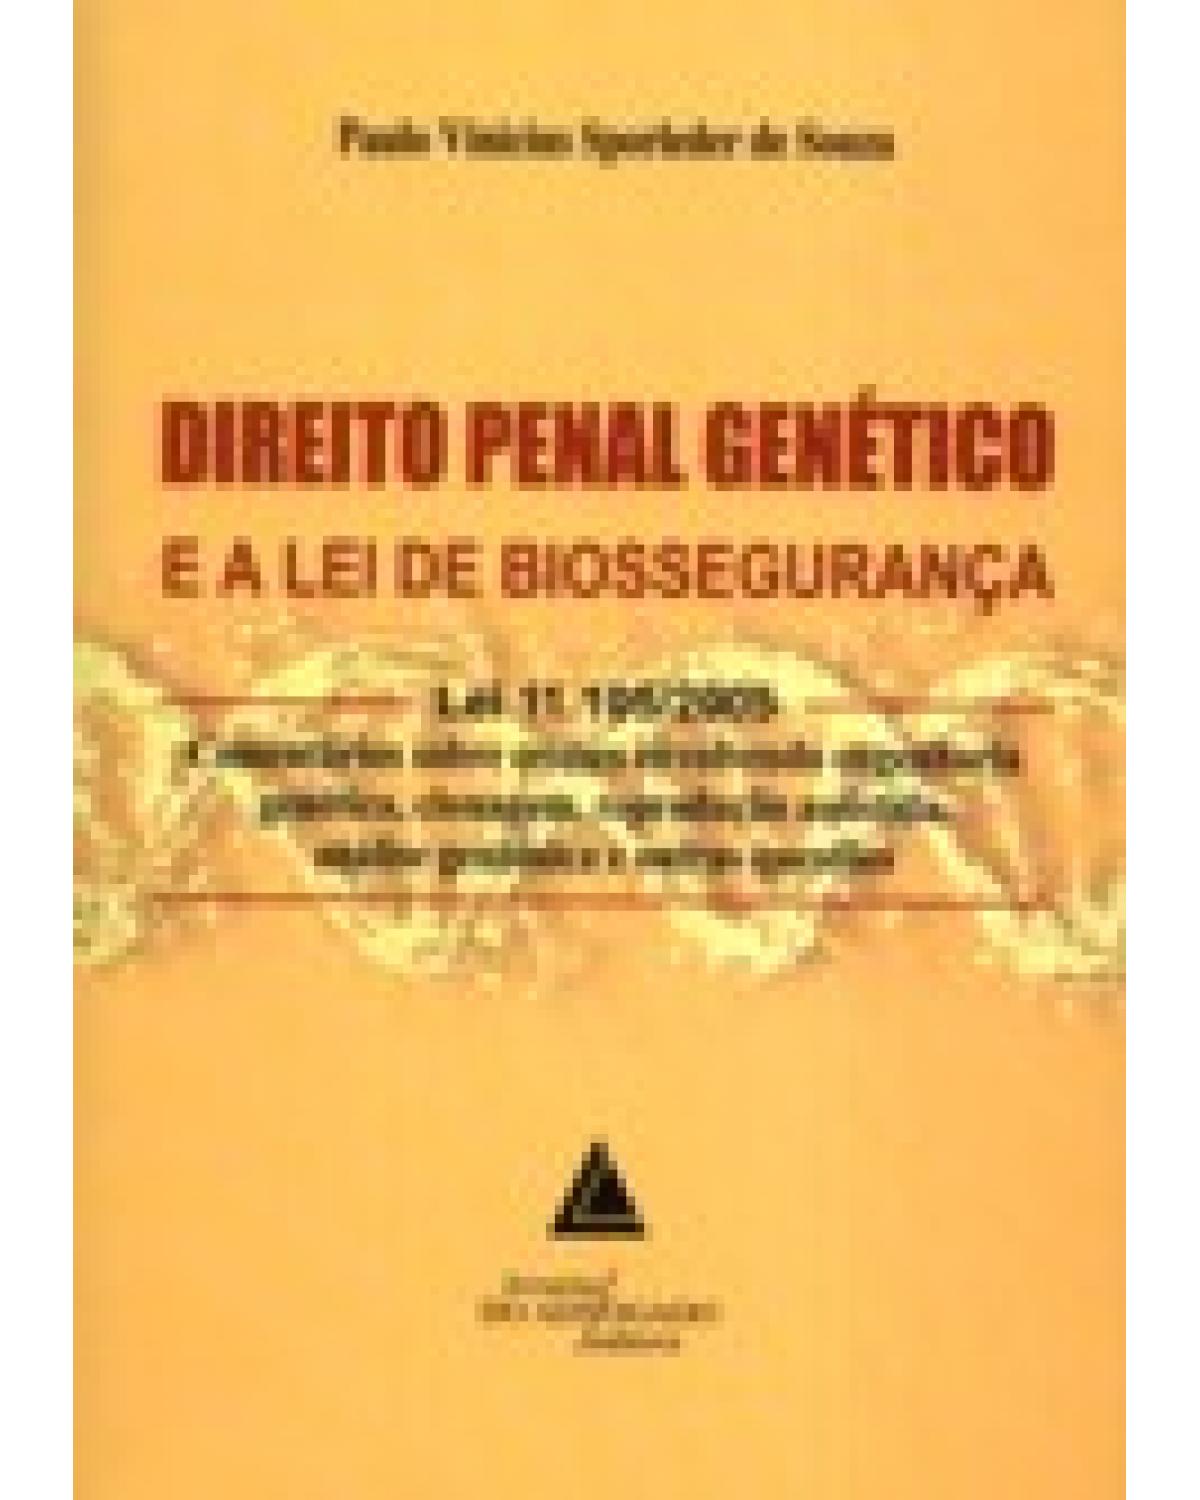 Direito penal genético e a Lei de biossegurança - Lei 11.105/2005: Comentários sobre crimes envolvendo engenharia genética, clonagem, reprodução assistida, análise genômica e outras questões